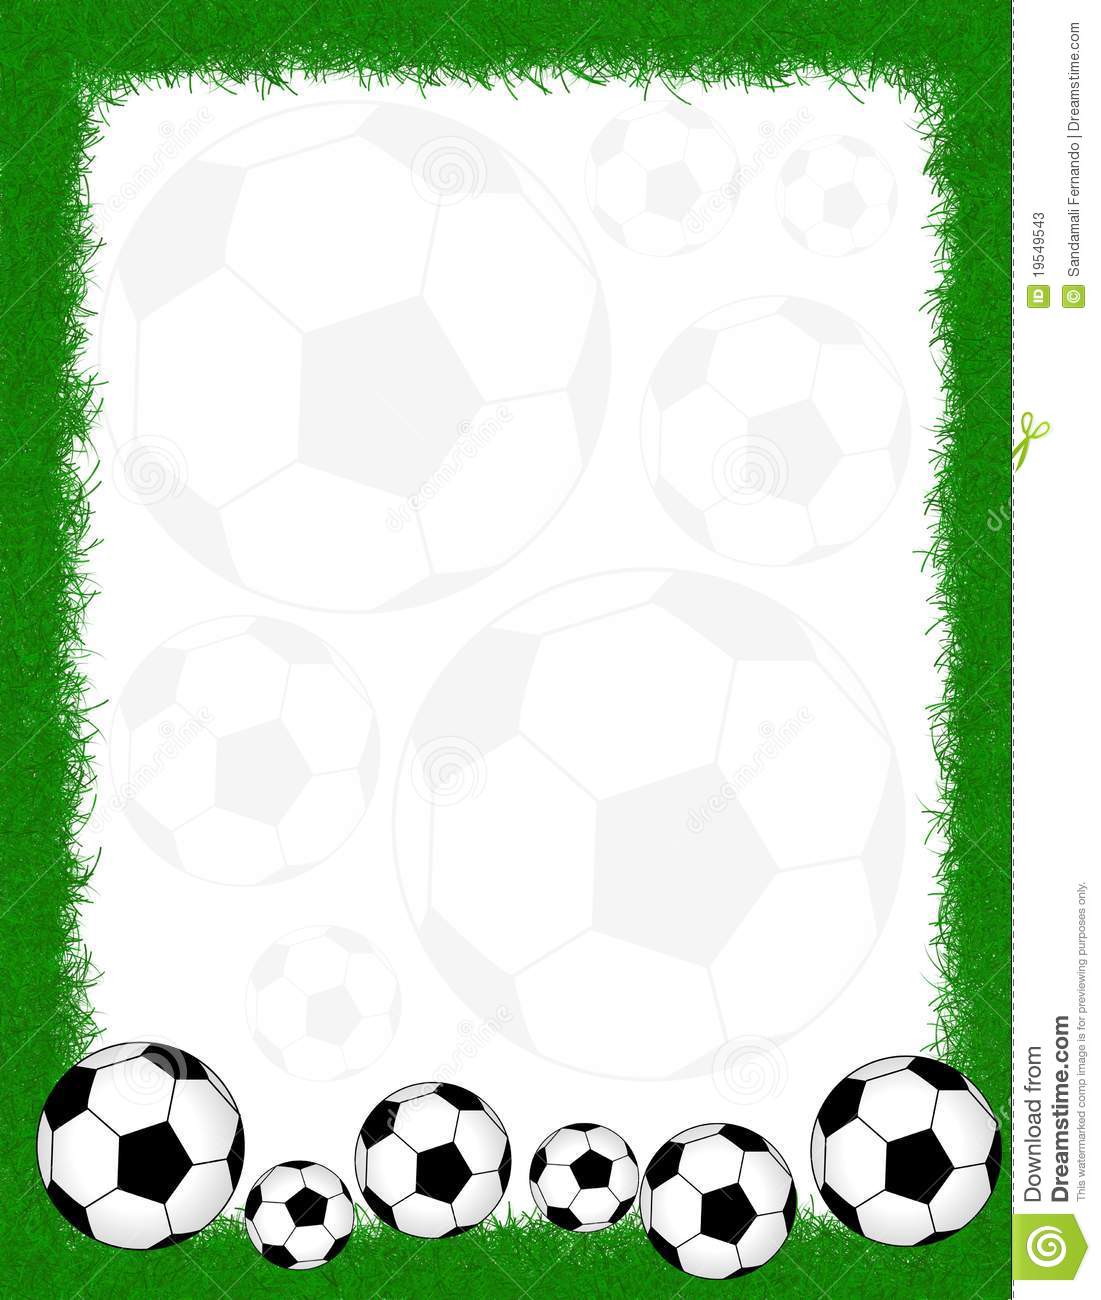 Soccer frame border.